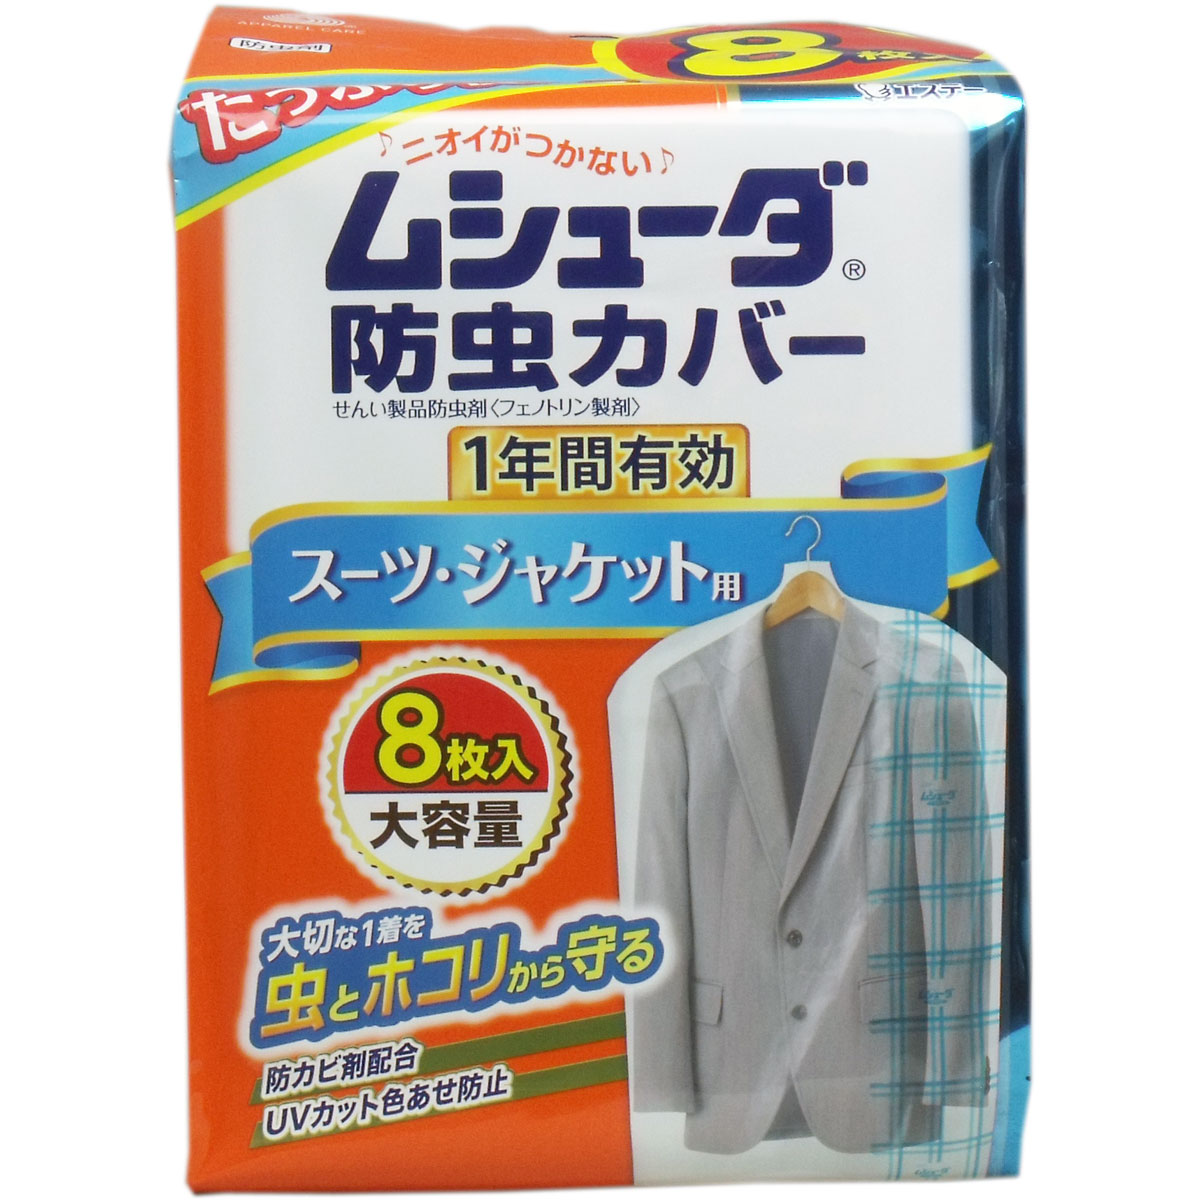 日本良品 / ムシューダ防虫カバー 1年間有効 スーツ・ジャケット用 8枚入